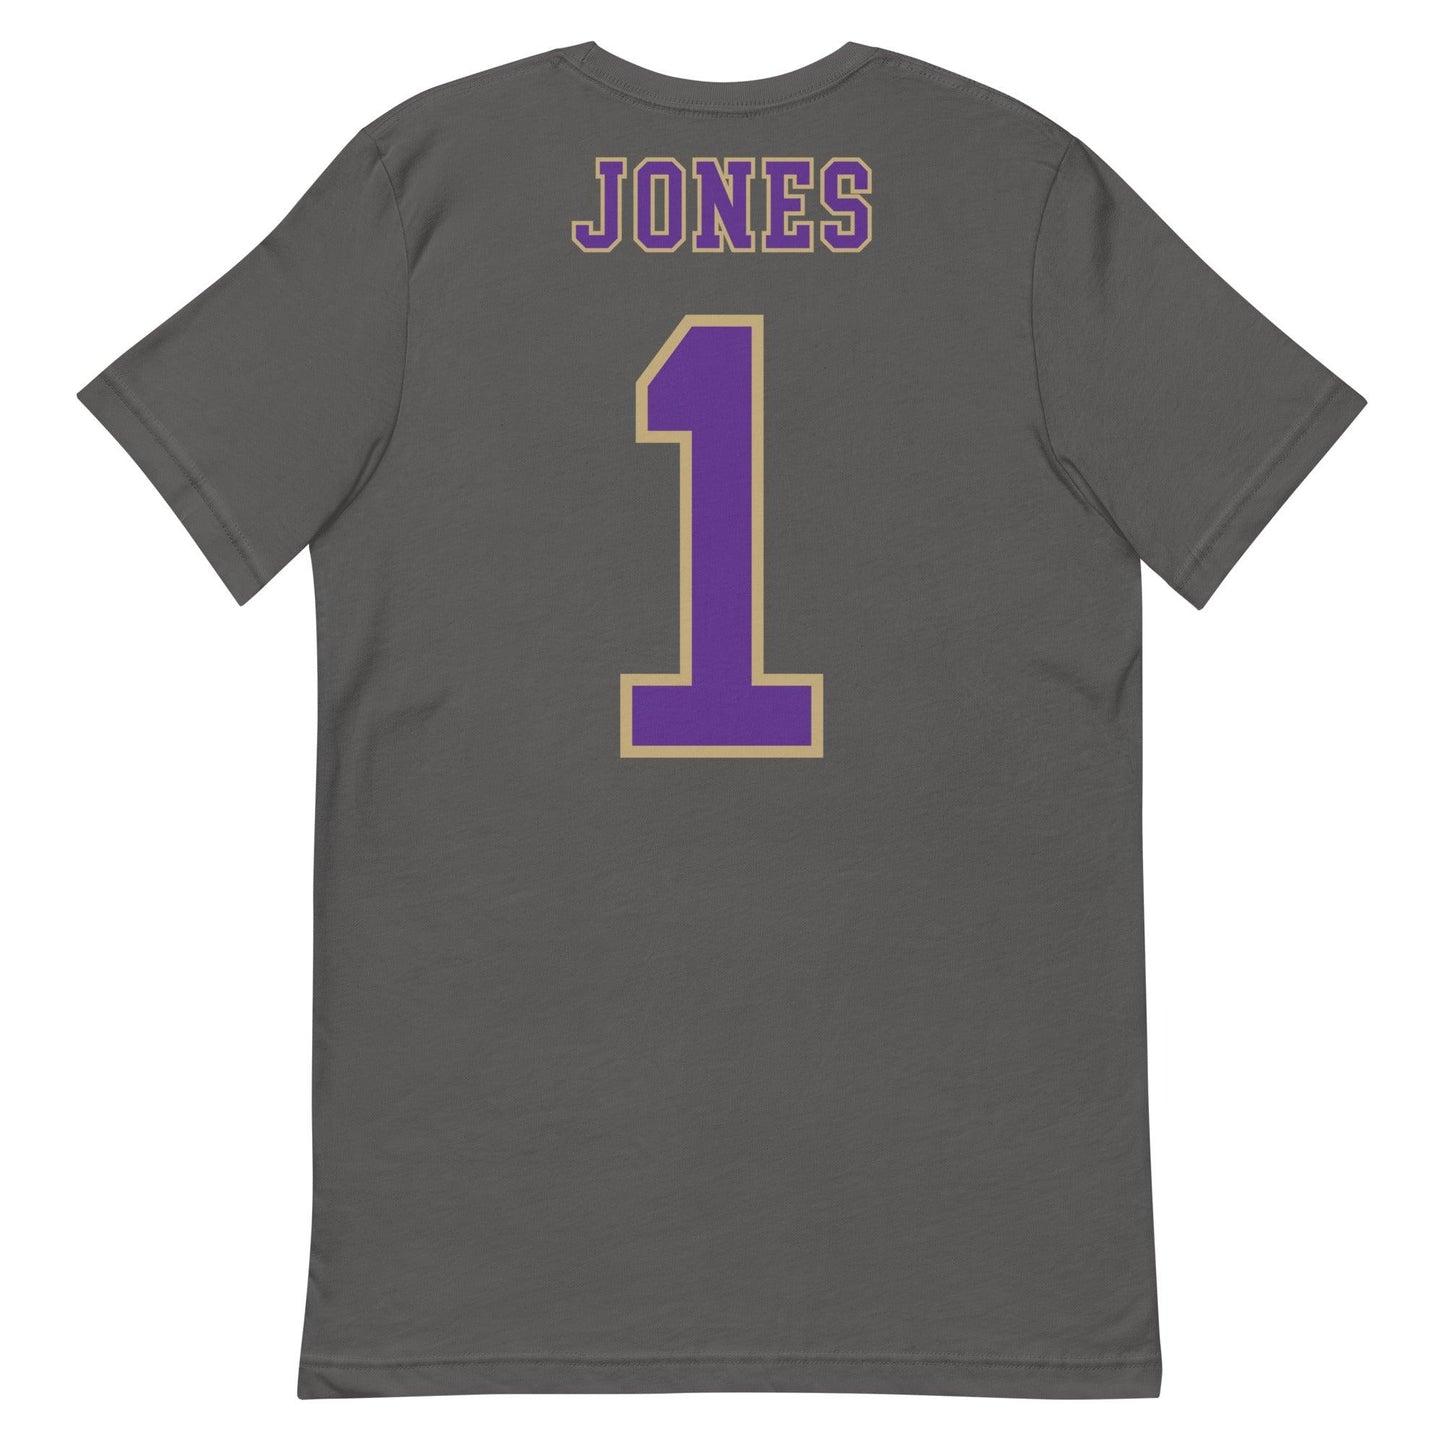 Russell Jones "Jersey" t-shirt - Fan Arch